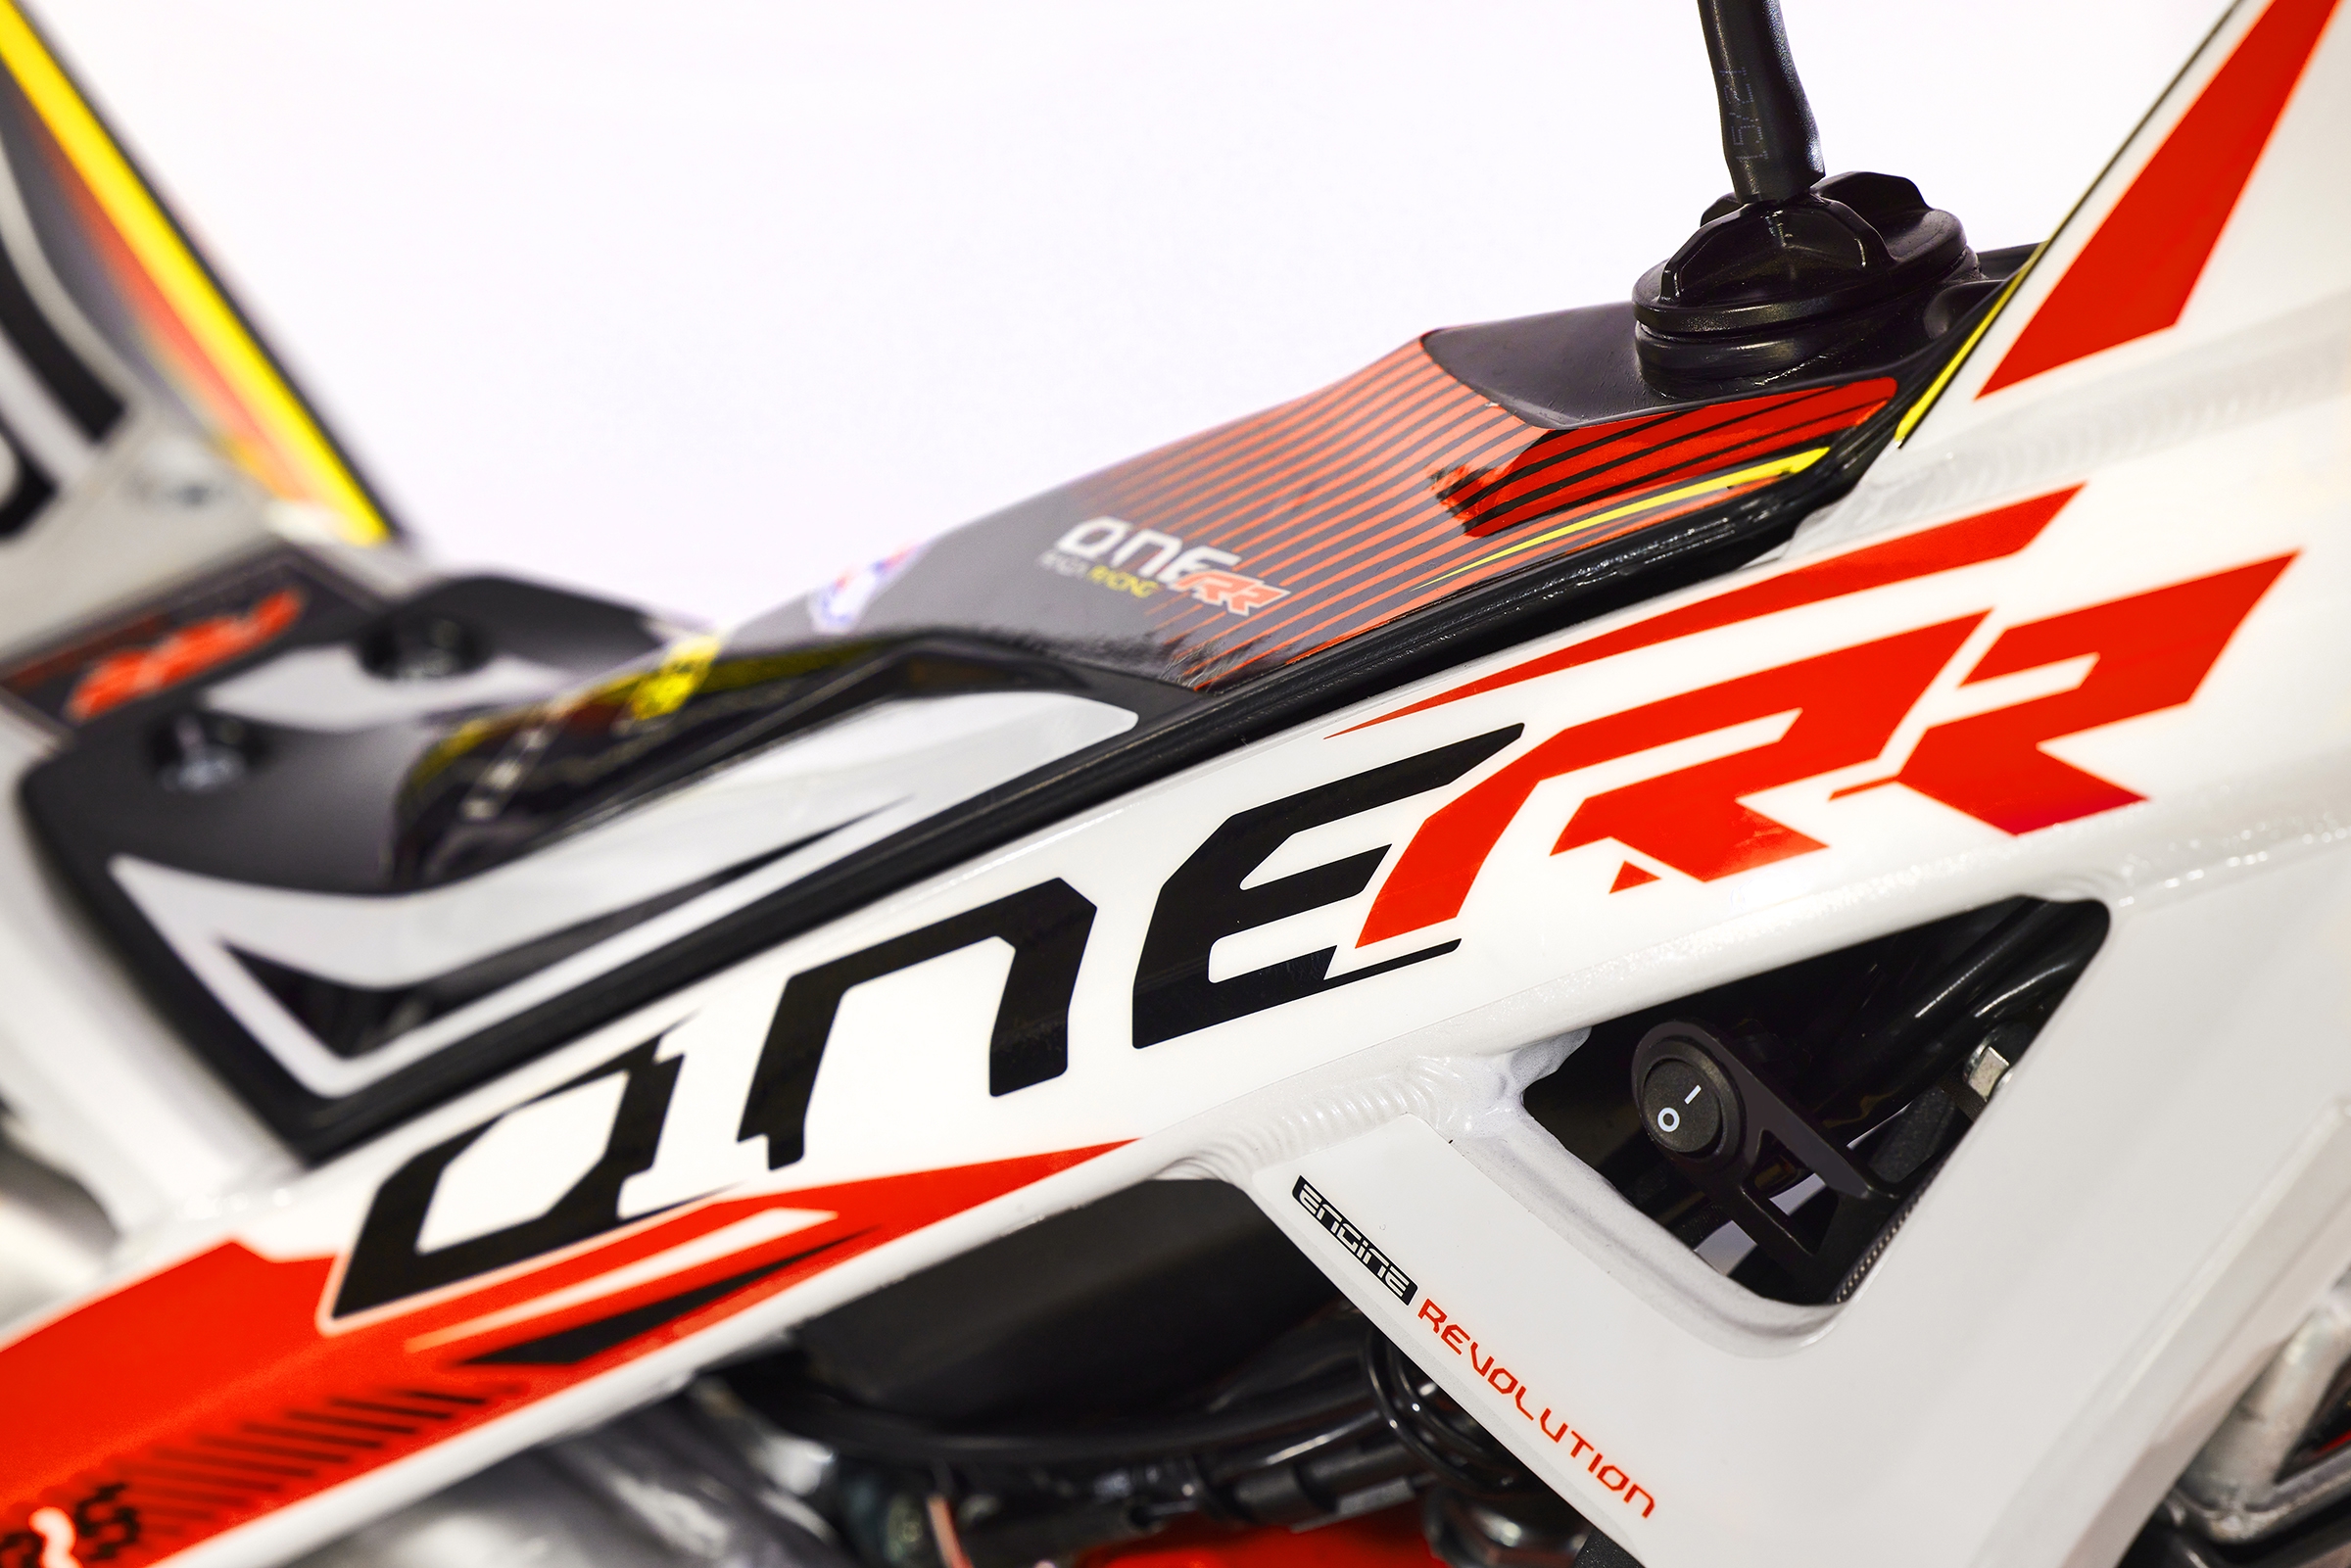 ONE RR(RAGARACING) | TRRS MOTORCYCLES JAPAN